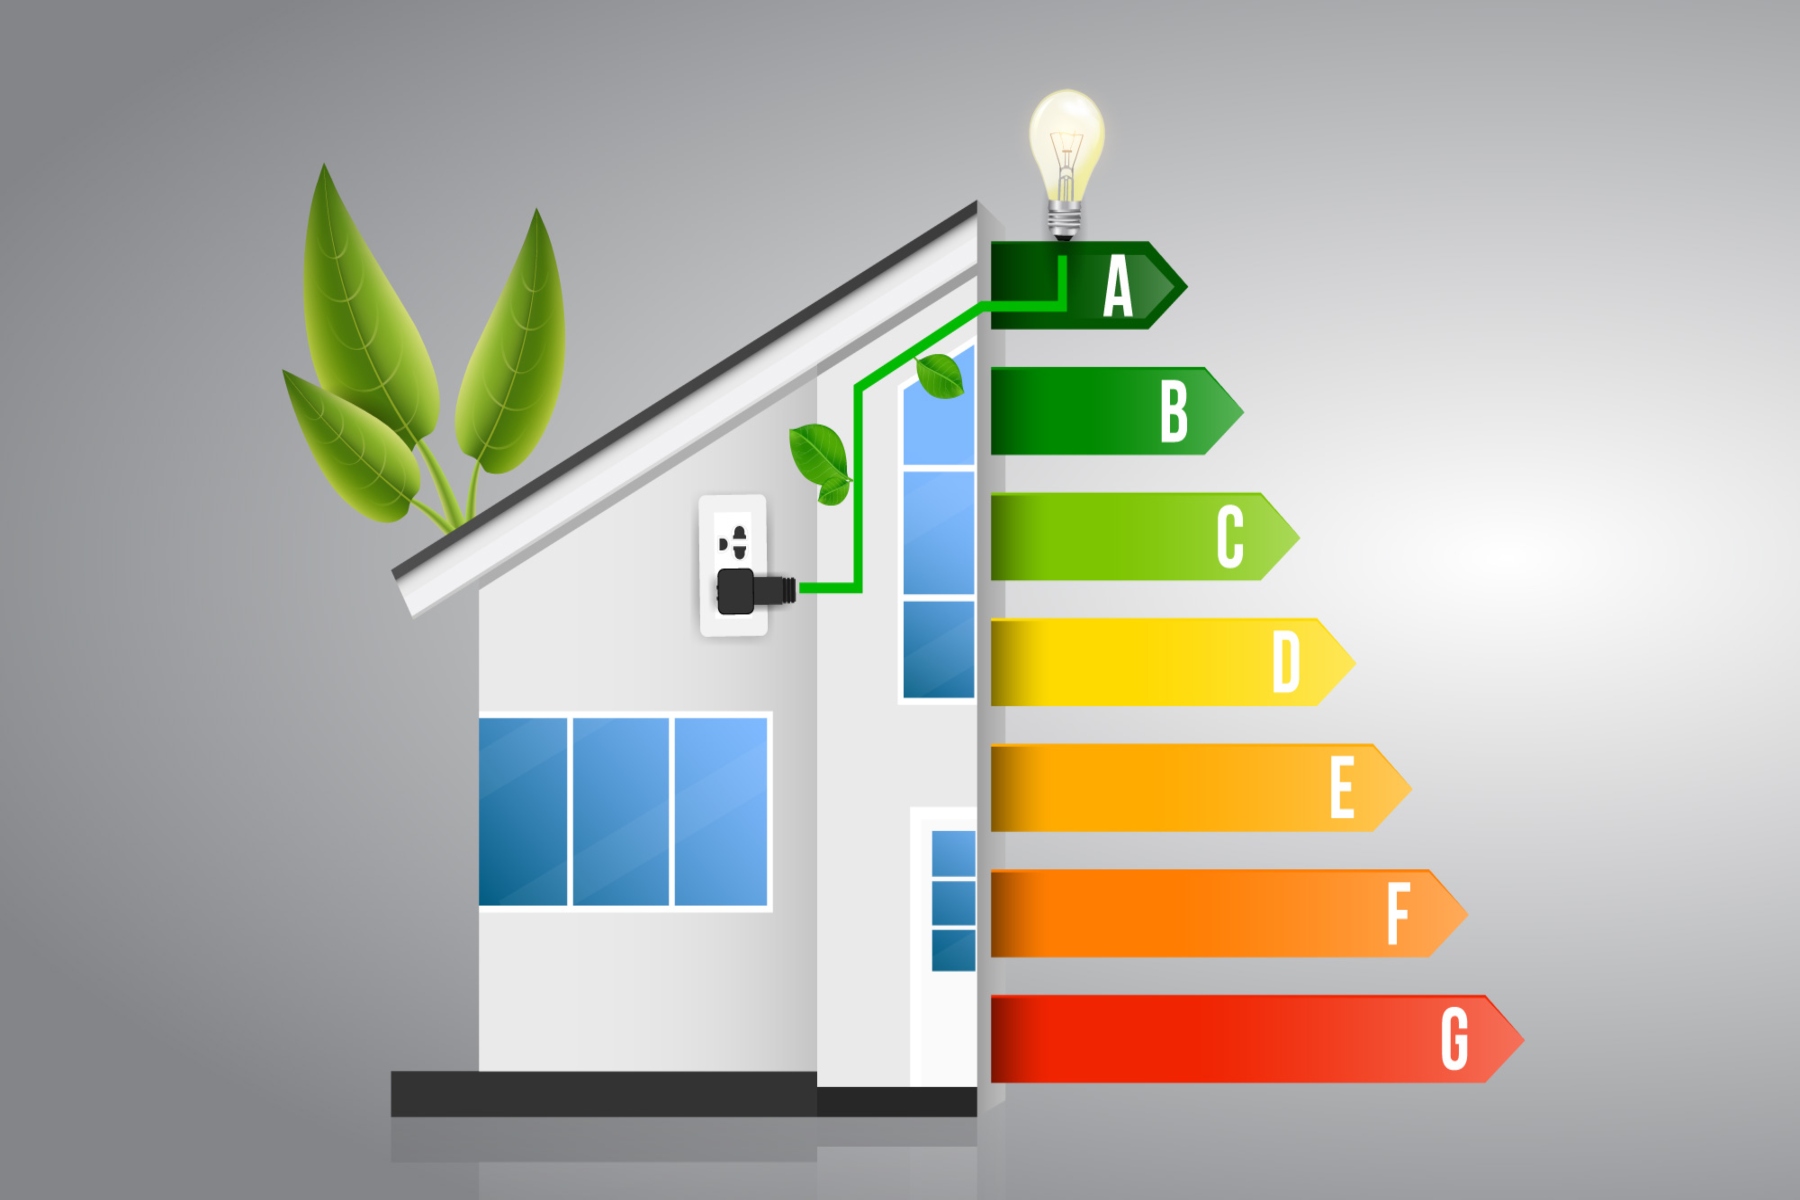 Ηνωμένο Βασίλειο: 3 στα 5 νοικοκυριά έχουν χαμηλή ενεργειακή απόδοση